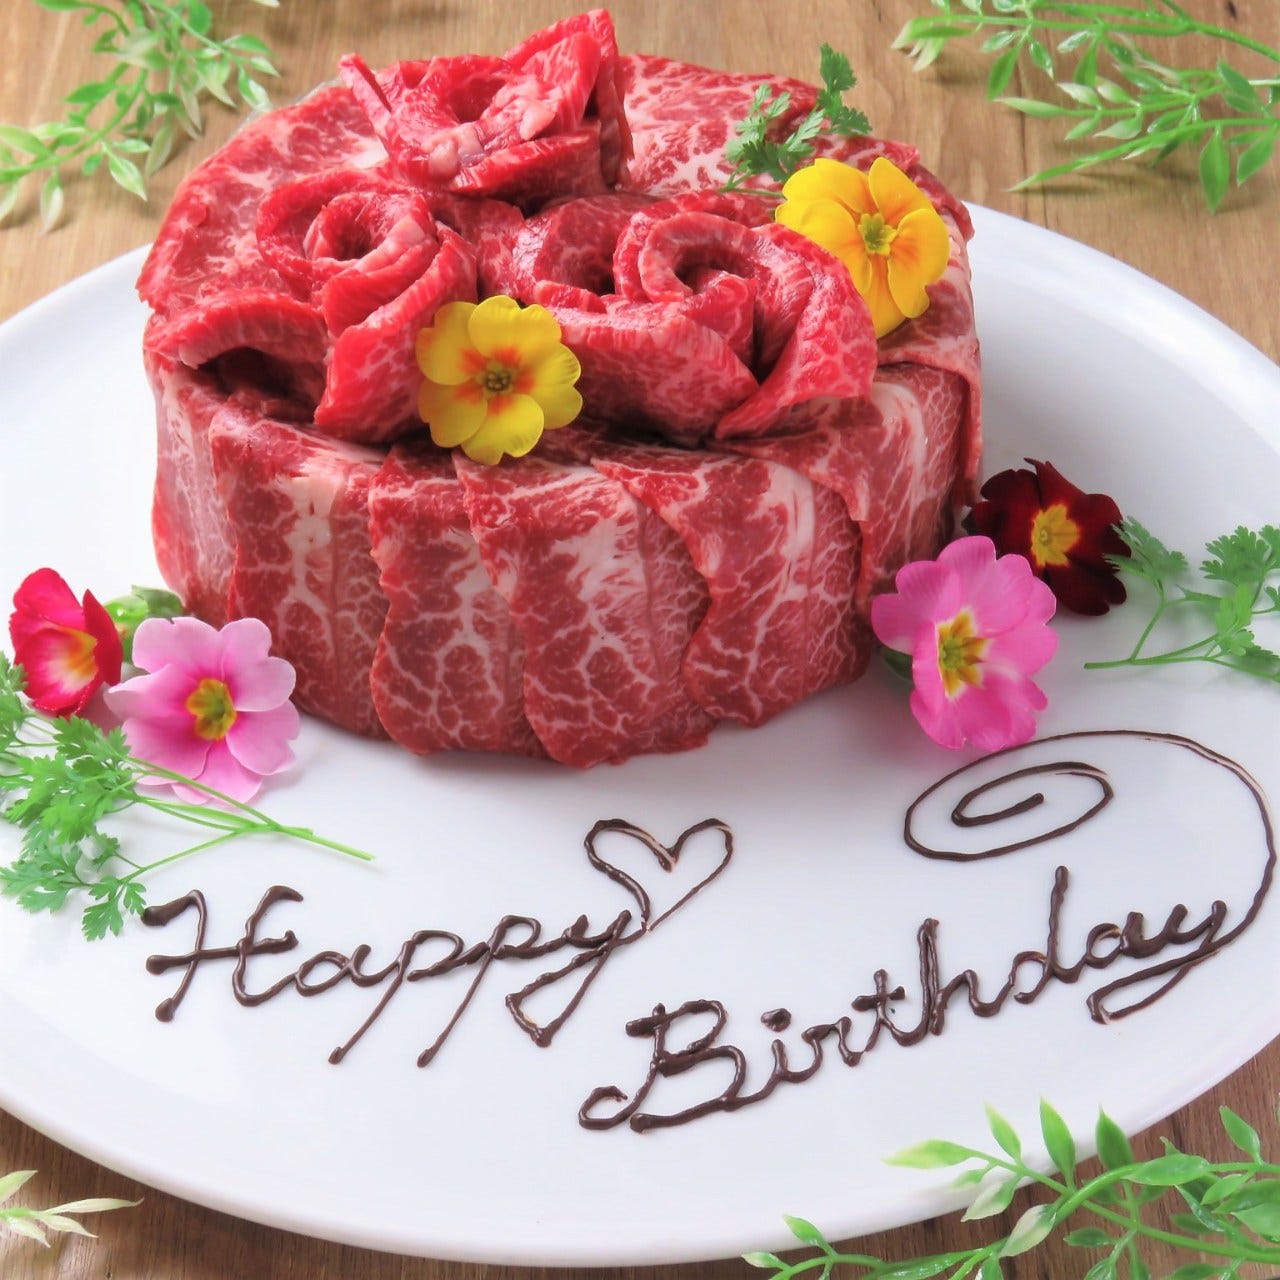 特製肉ケーキでお祝い！
特別な日にぜひ！